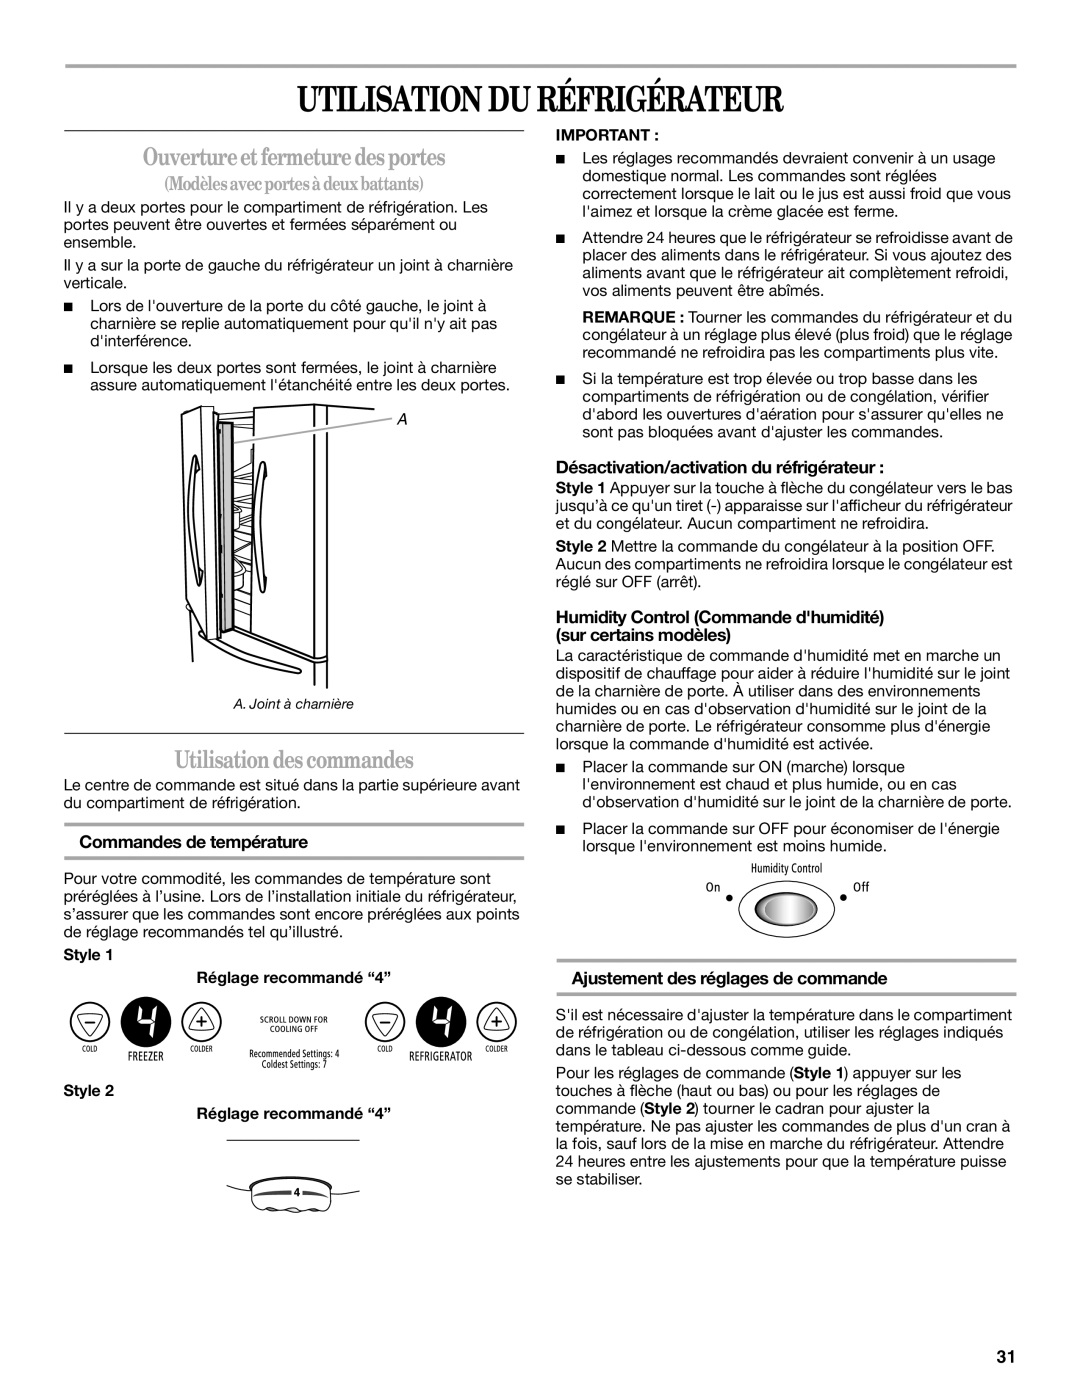 Whirlpool W10175448A Utilisation Du Réfrigérateur, Ouvertureet fermeture des portes, Utilisation des commandes 